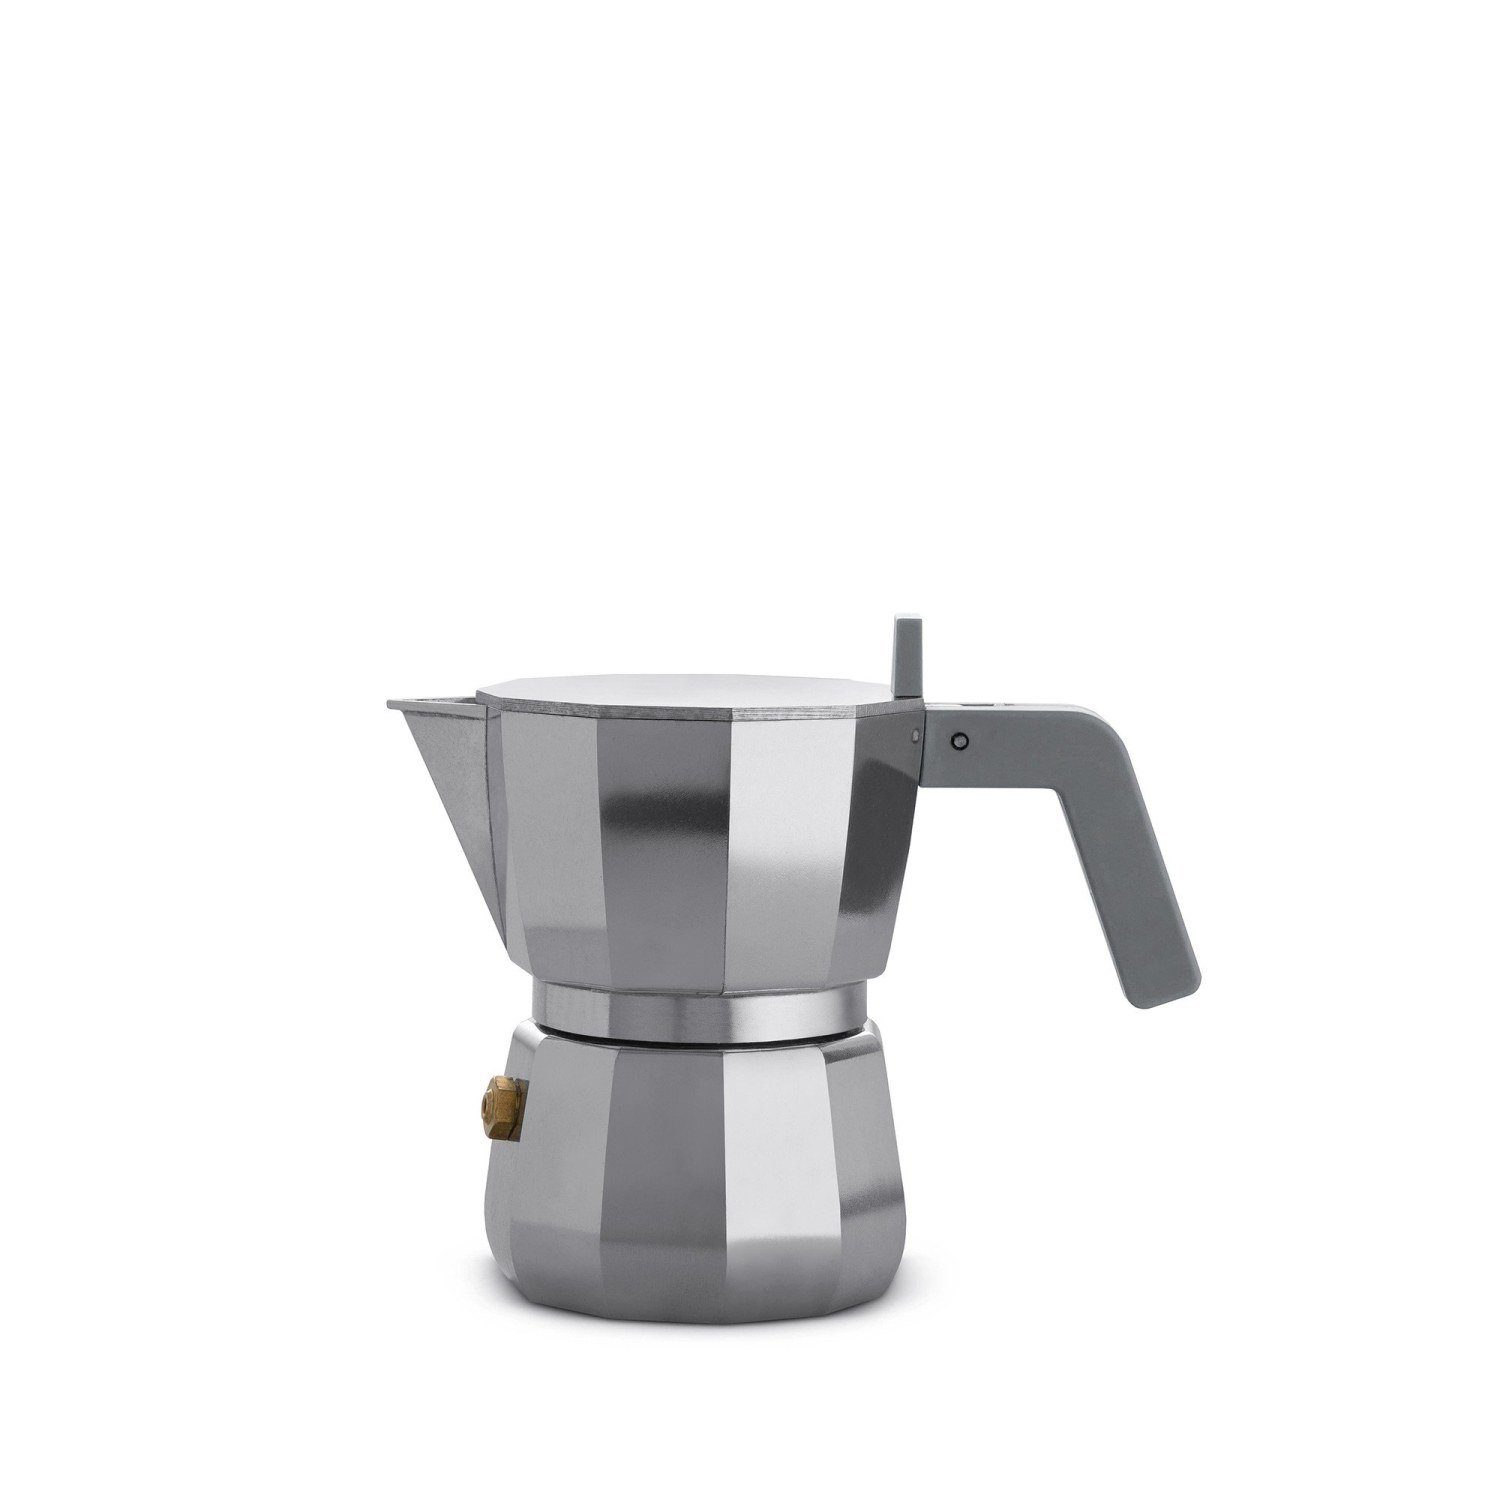 Alessi Espressokocher Espressokocher MOKA modern 1, 0.07l Kaffeekanne,  Nicht für Induktion geeignet, auf dem flachen Deckel kann eine Tasse  vorgewärmt werden